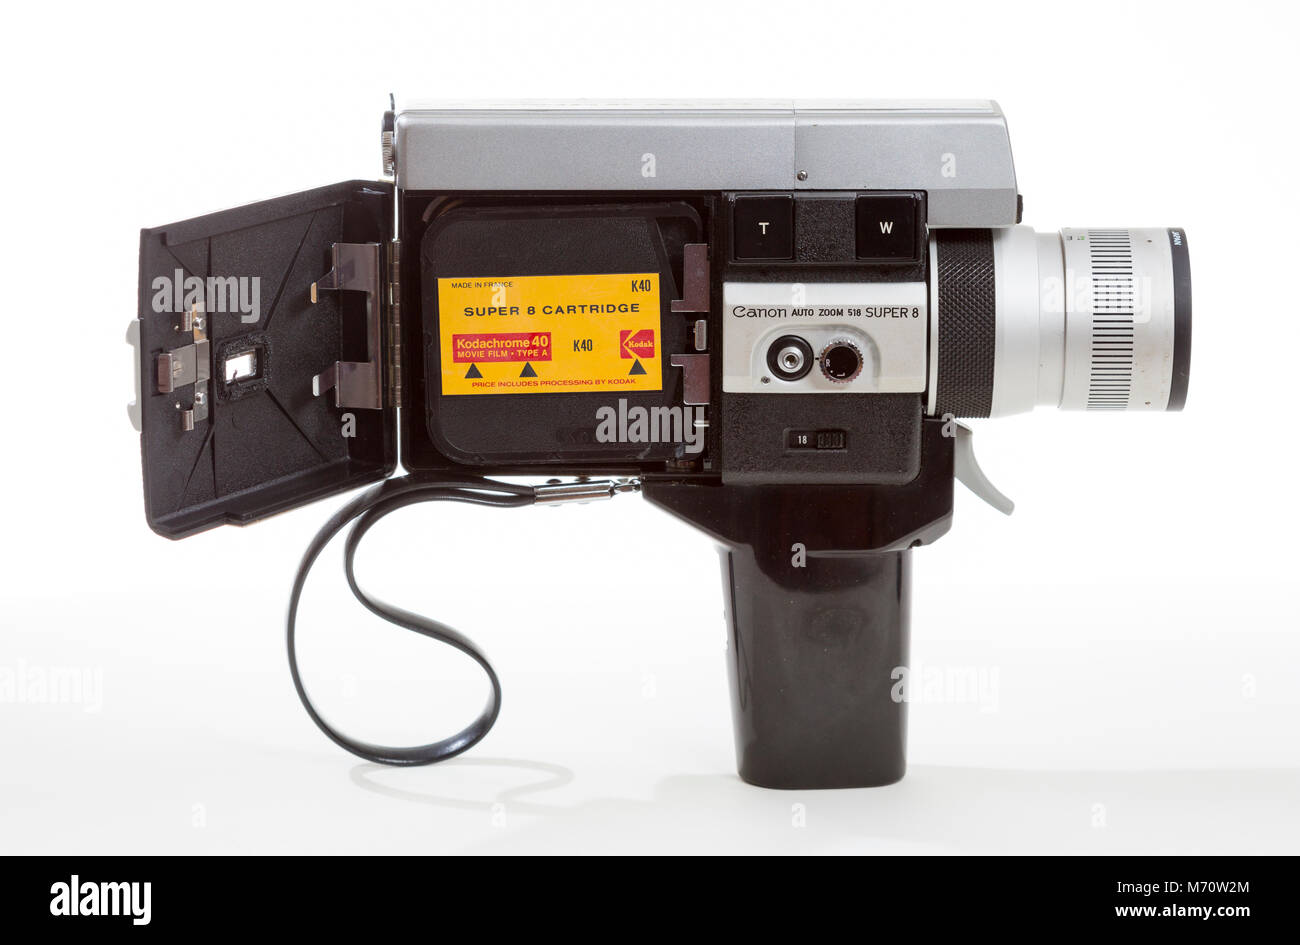 Canon super 8 mm cine Film Kamera mit einem Super 8 Kodachrome film Patrone. Stockfoto